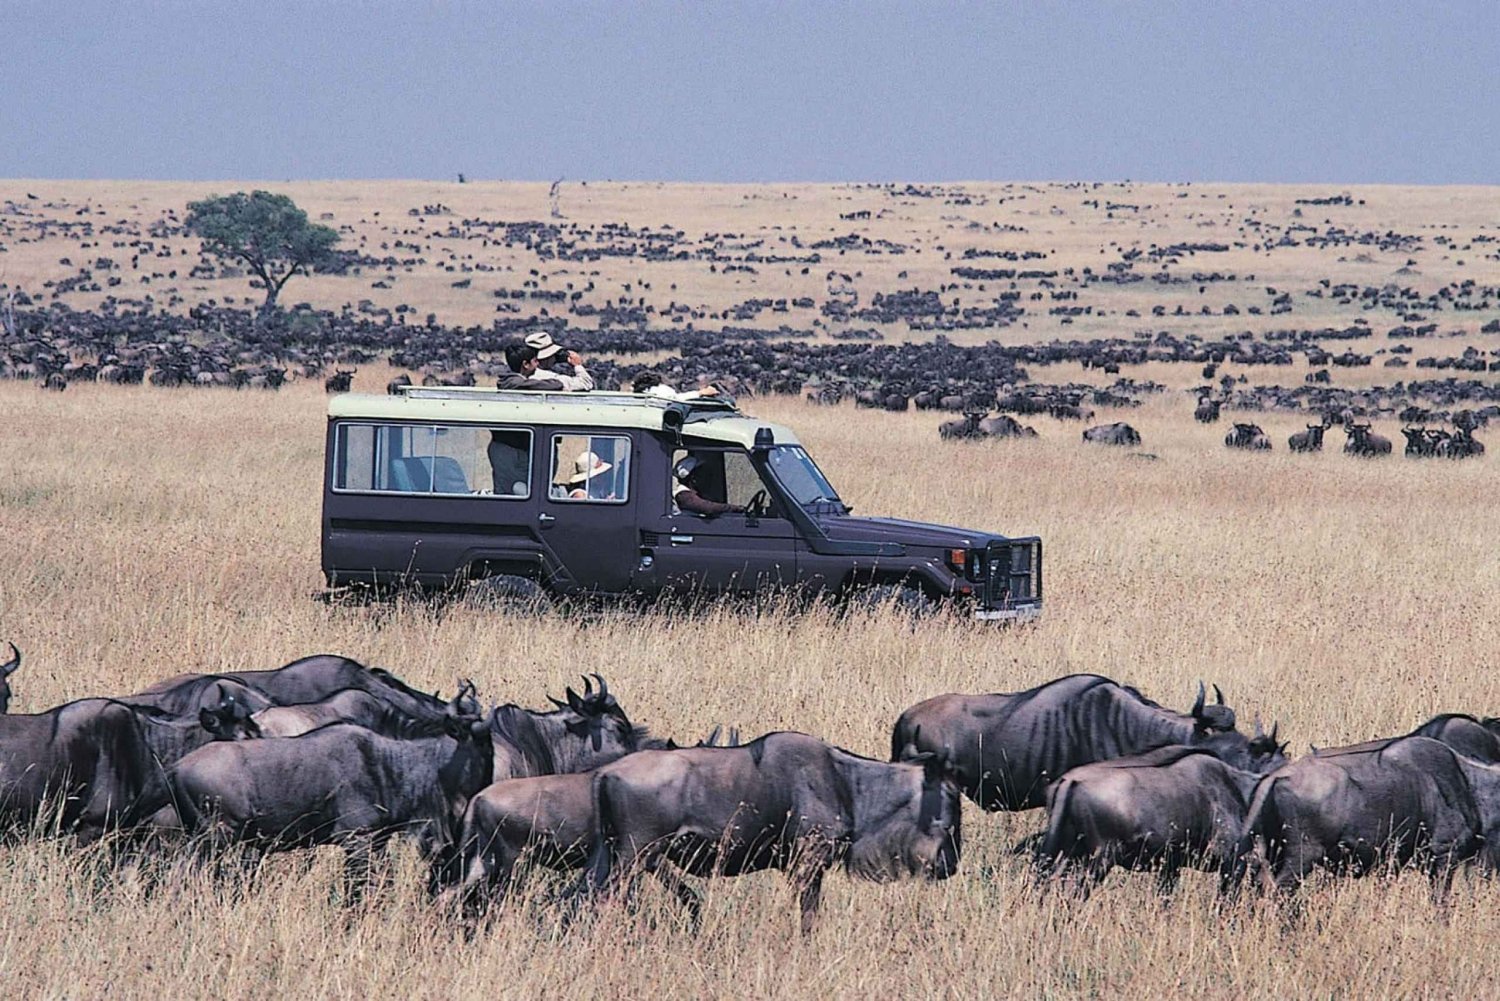 From Nairobi: Masai Mara 3-day Camping Safari by Jeep